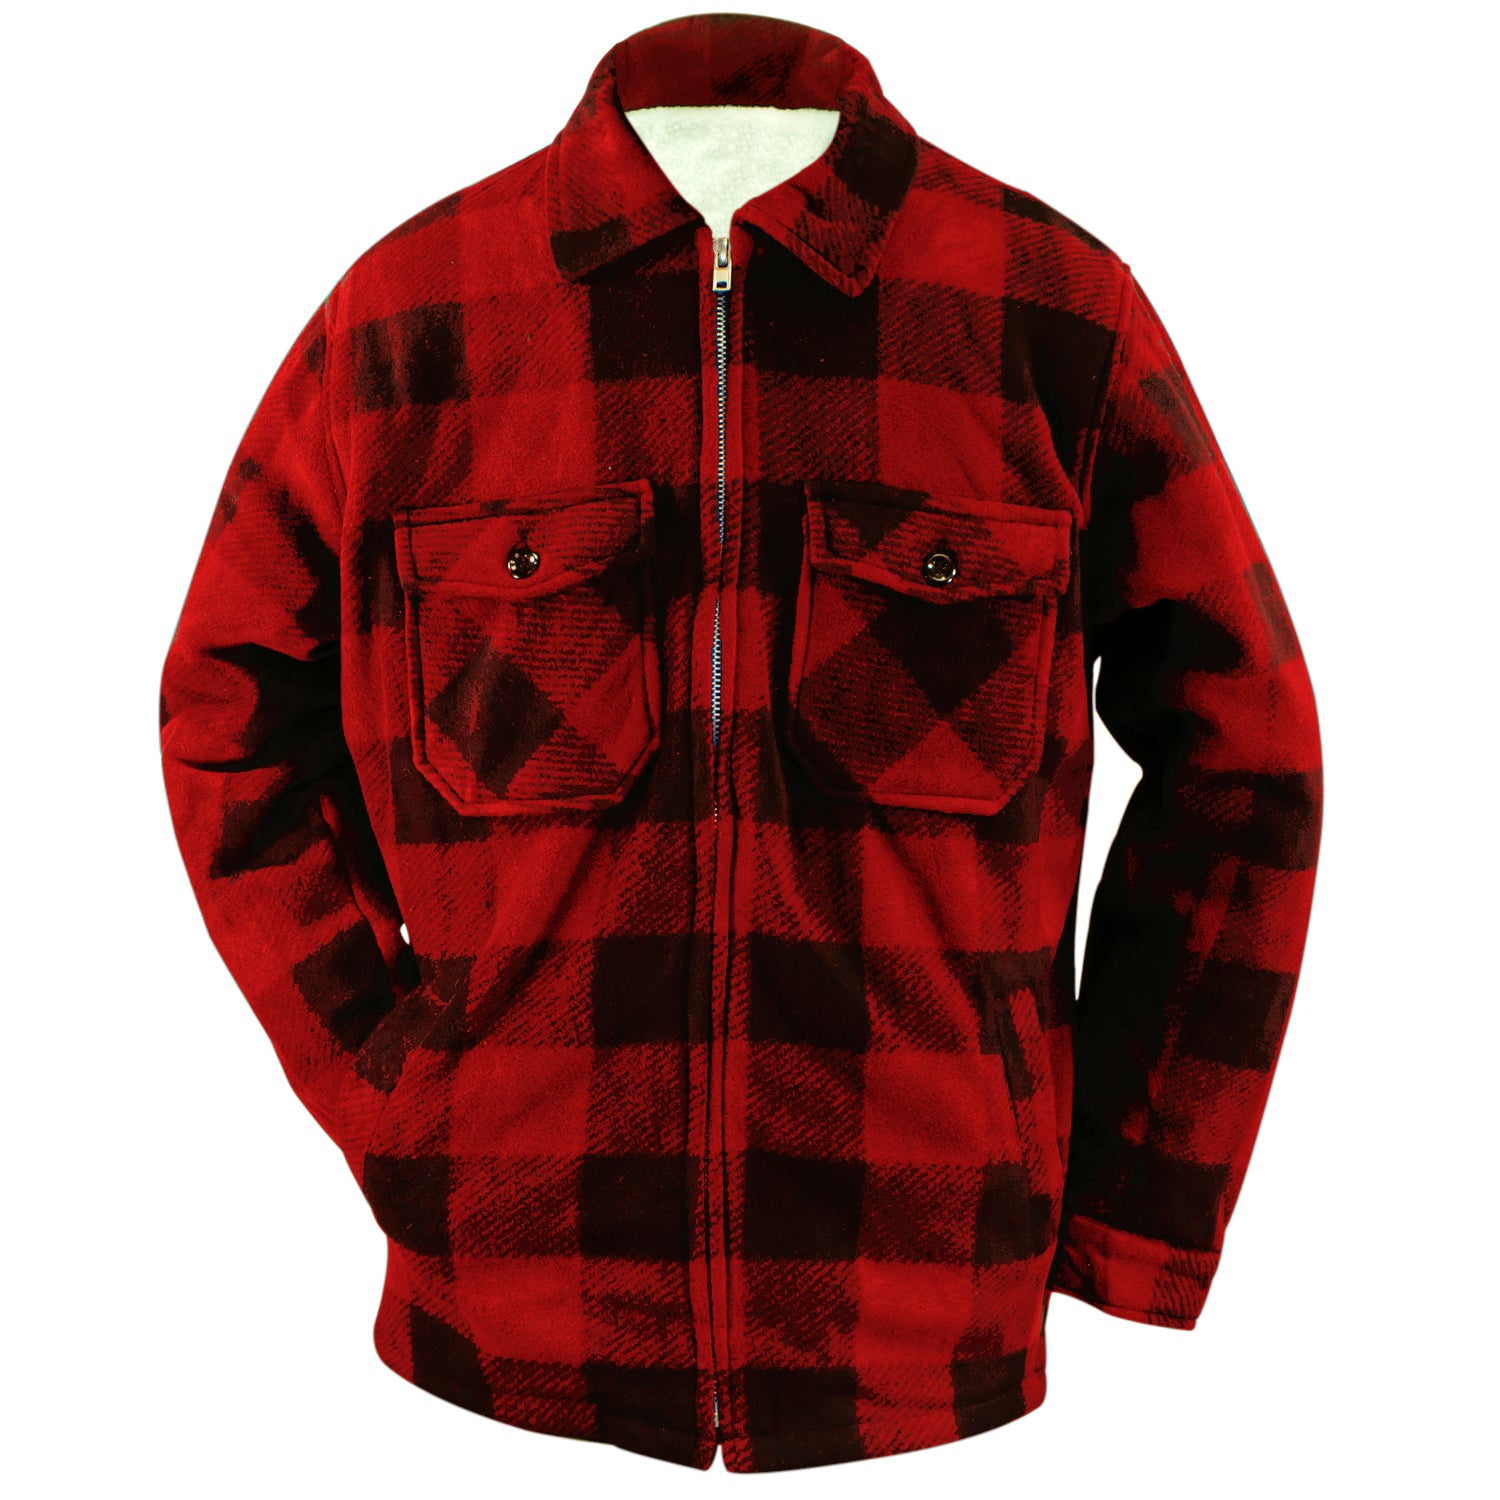 Weatherproof Vintage Lumber Jack Flannel Shirt Jacket for Men in Multi Brown